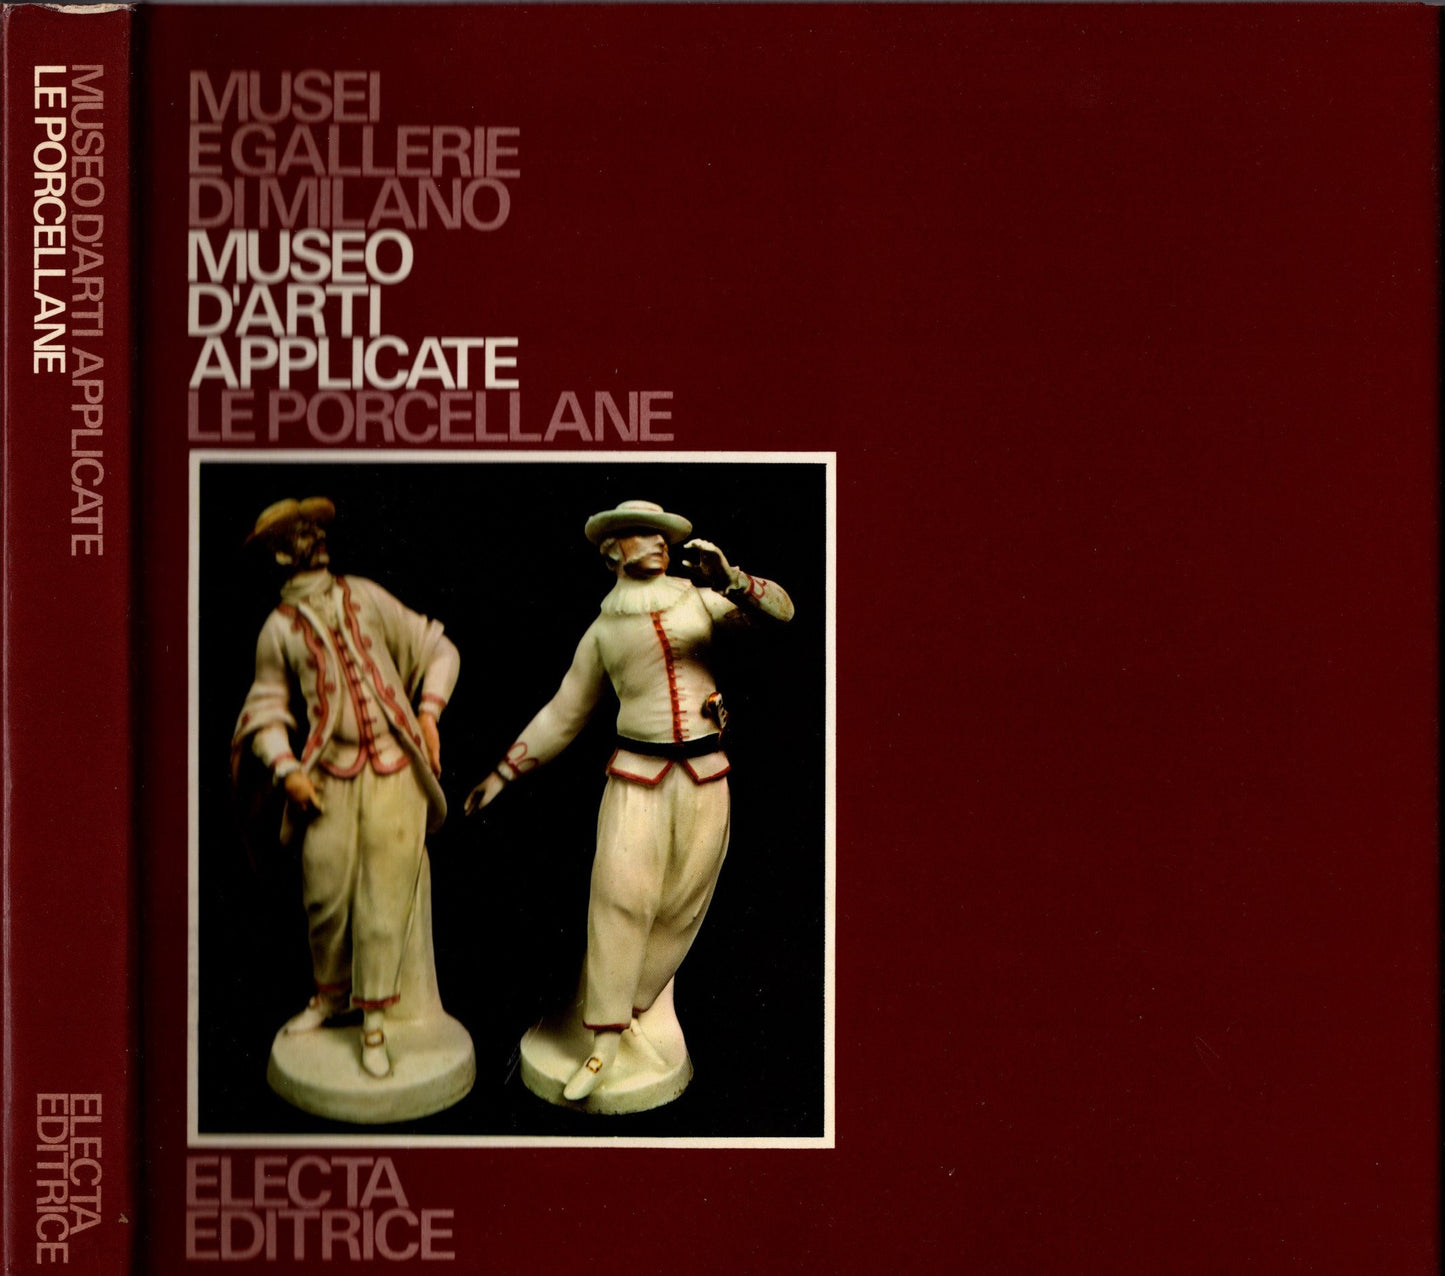 Museo d'arti applicate. Le porcellane - Musei e Gallerie di Milano